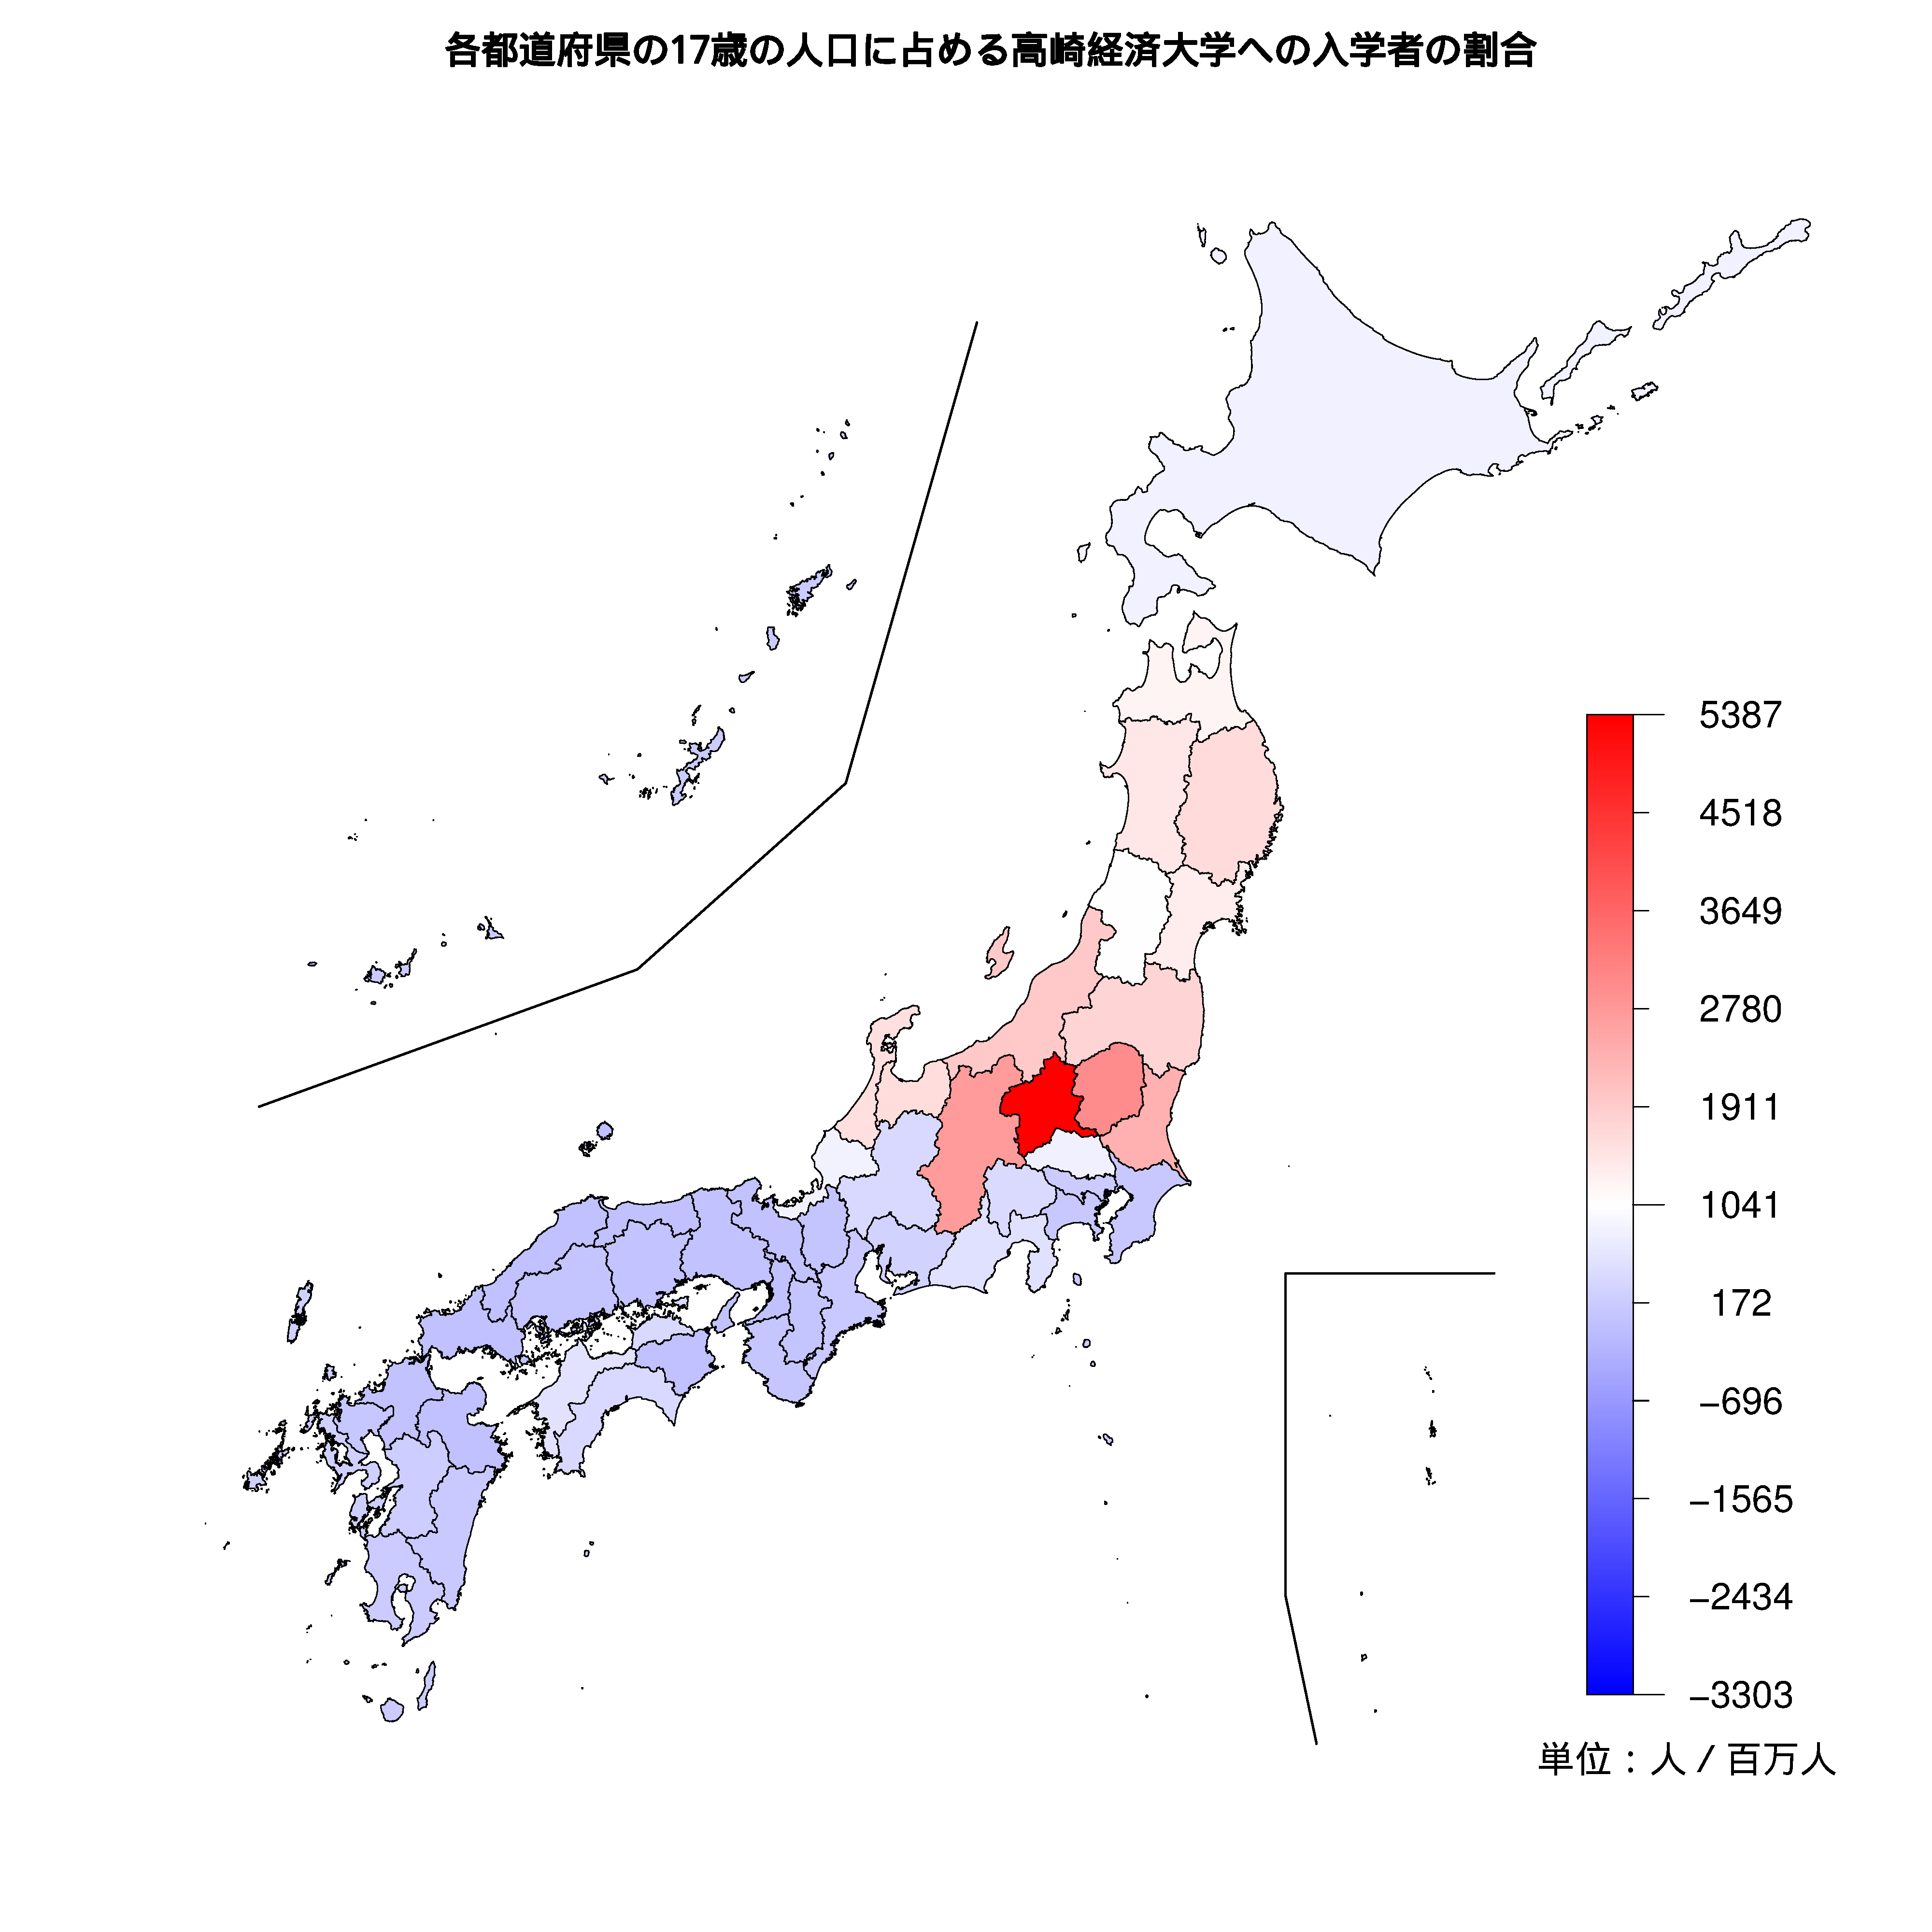 高崎経済大学への入学者が多い都道府県の色分け地図